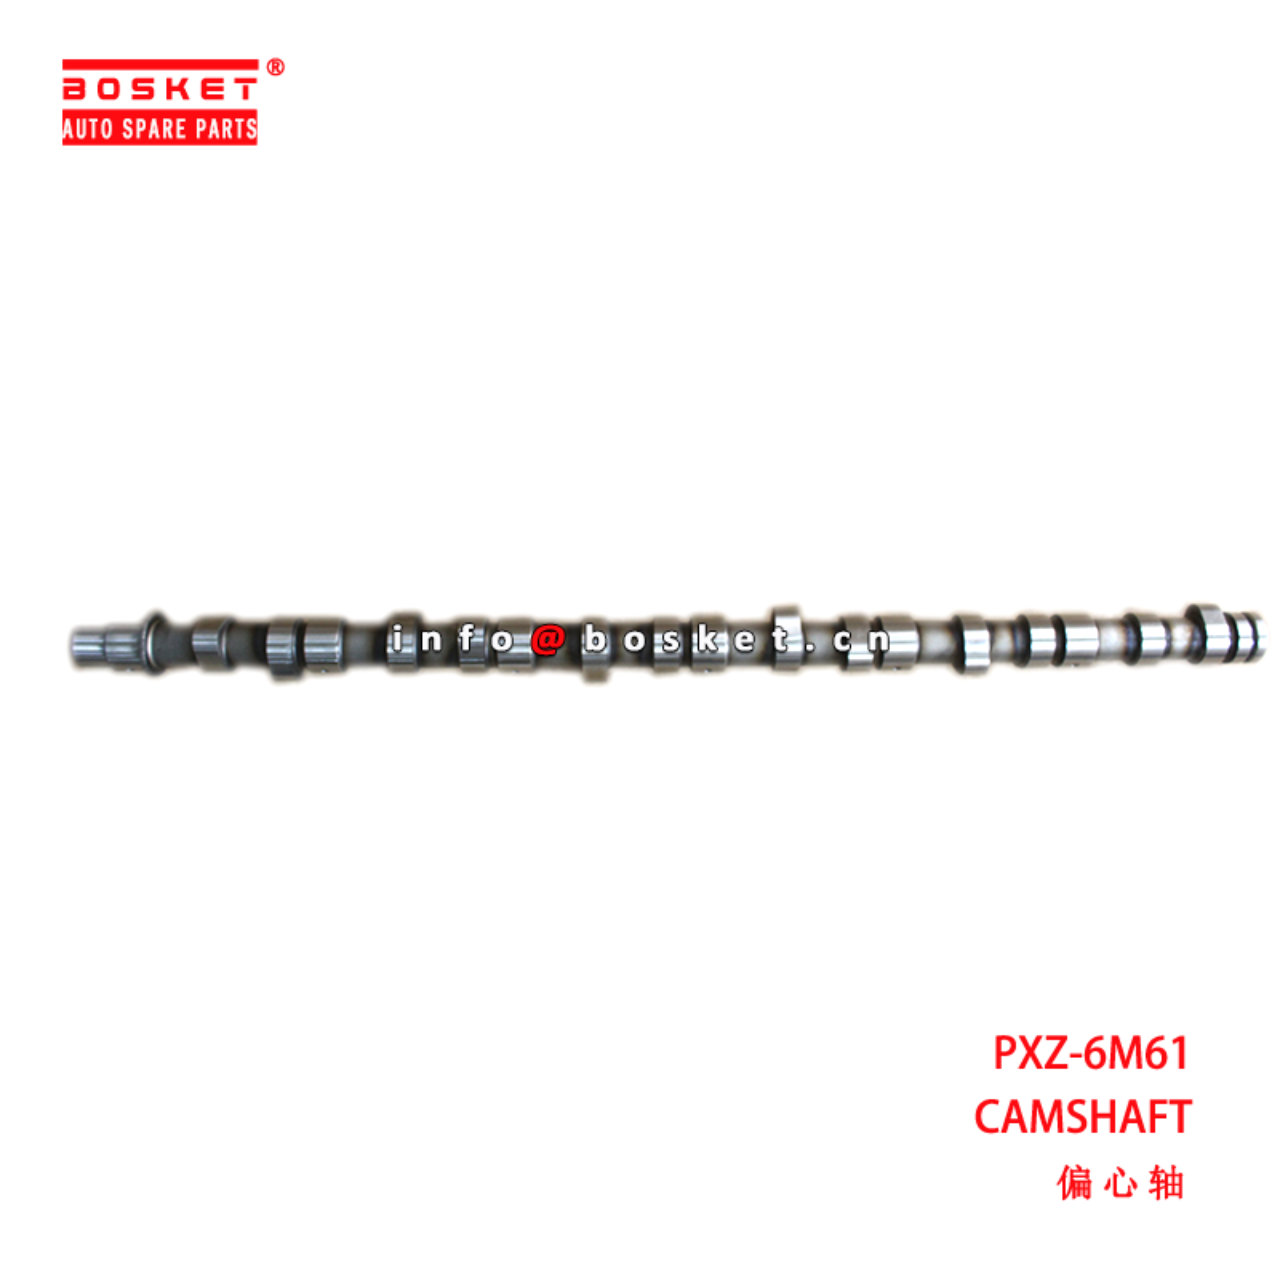 PXZ-6M61 Camshaft suitable for ISUZU  6M61 PXZ-6M61